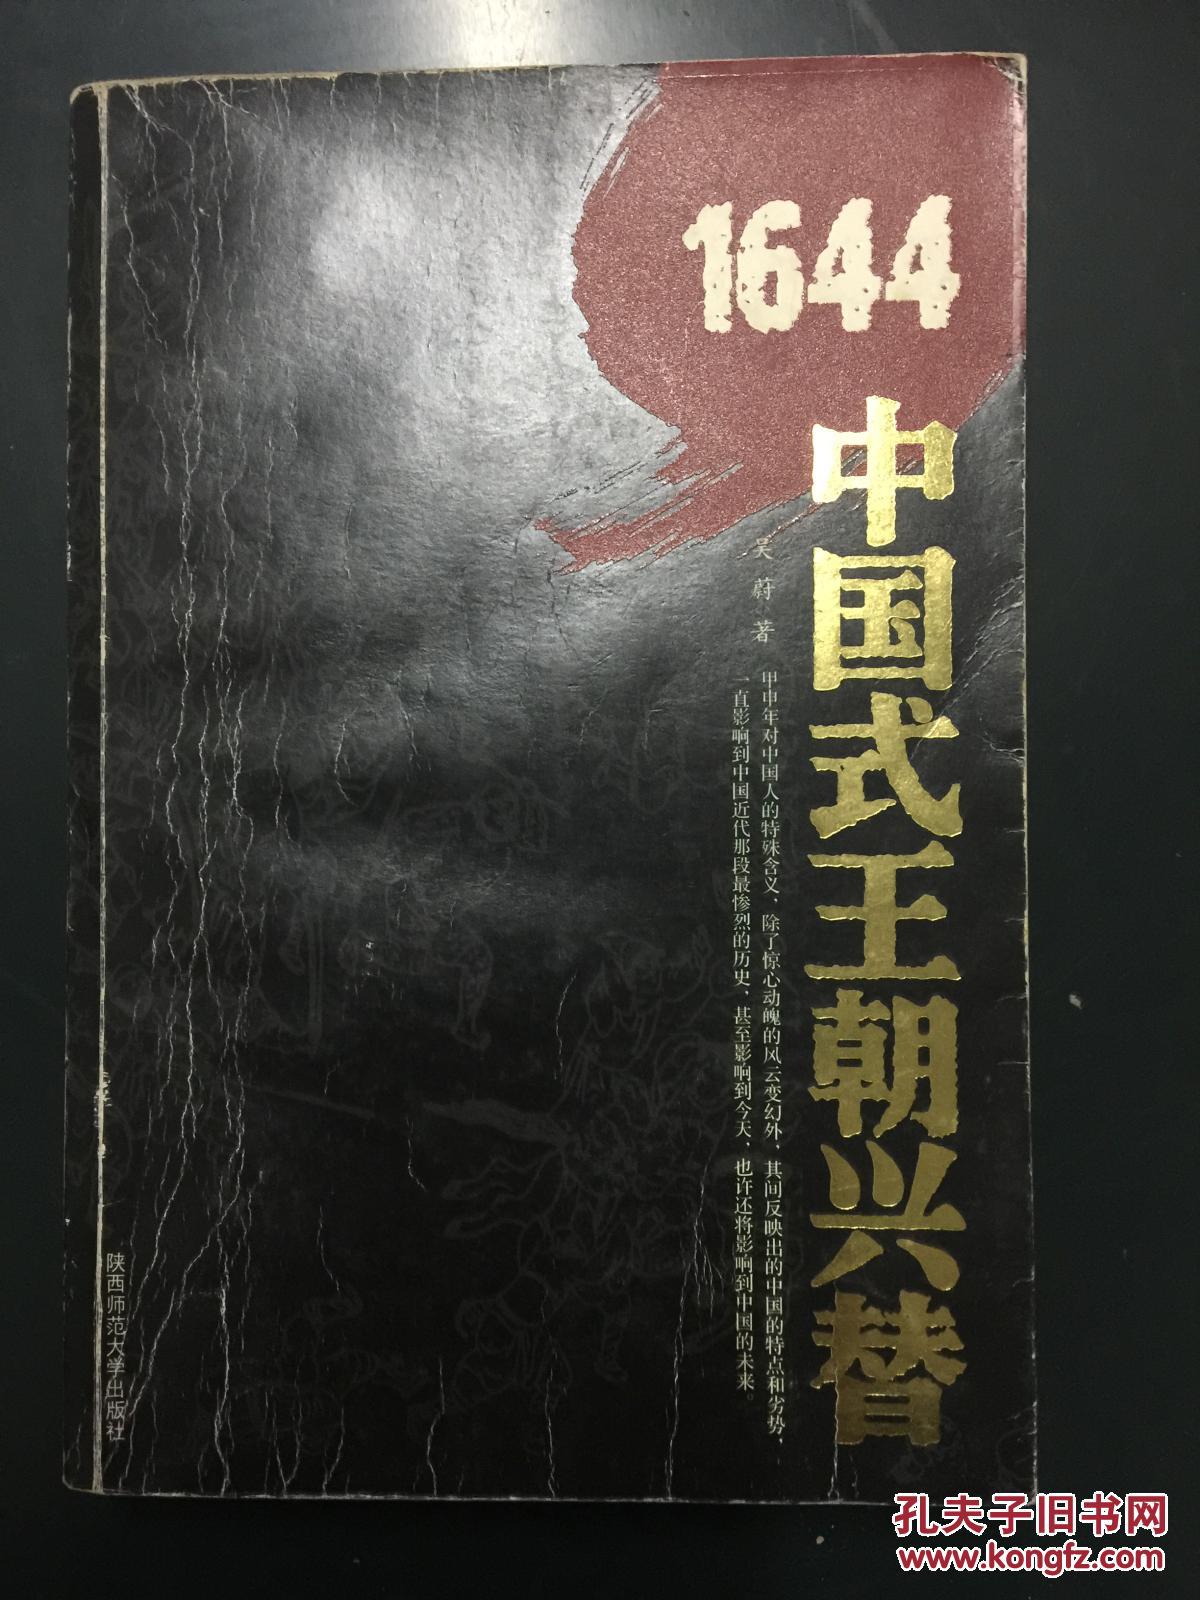 1644——中国式王朝兴替